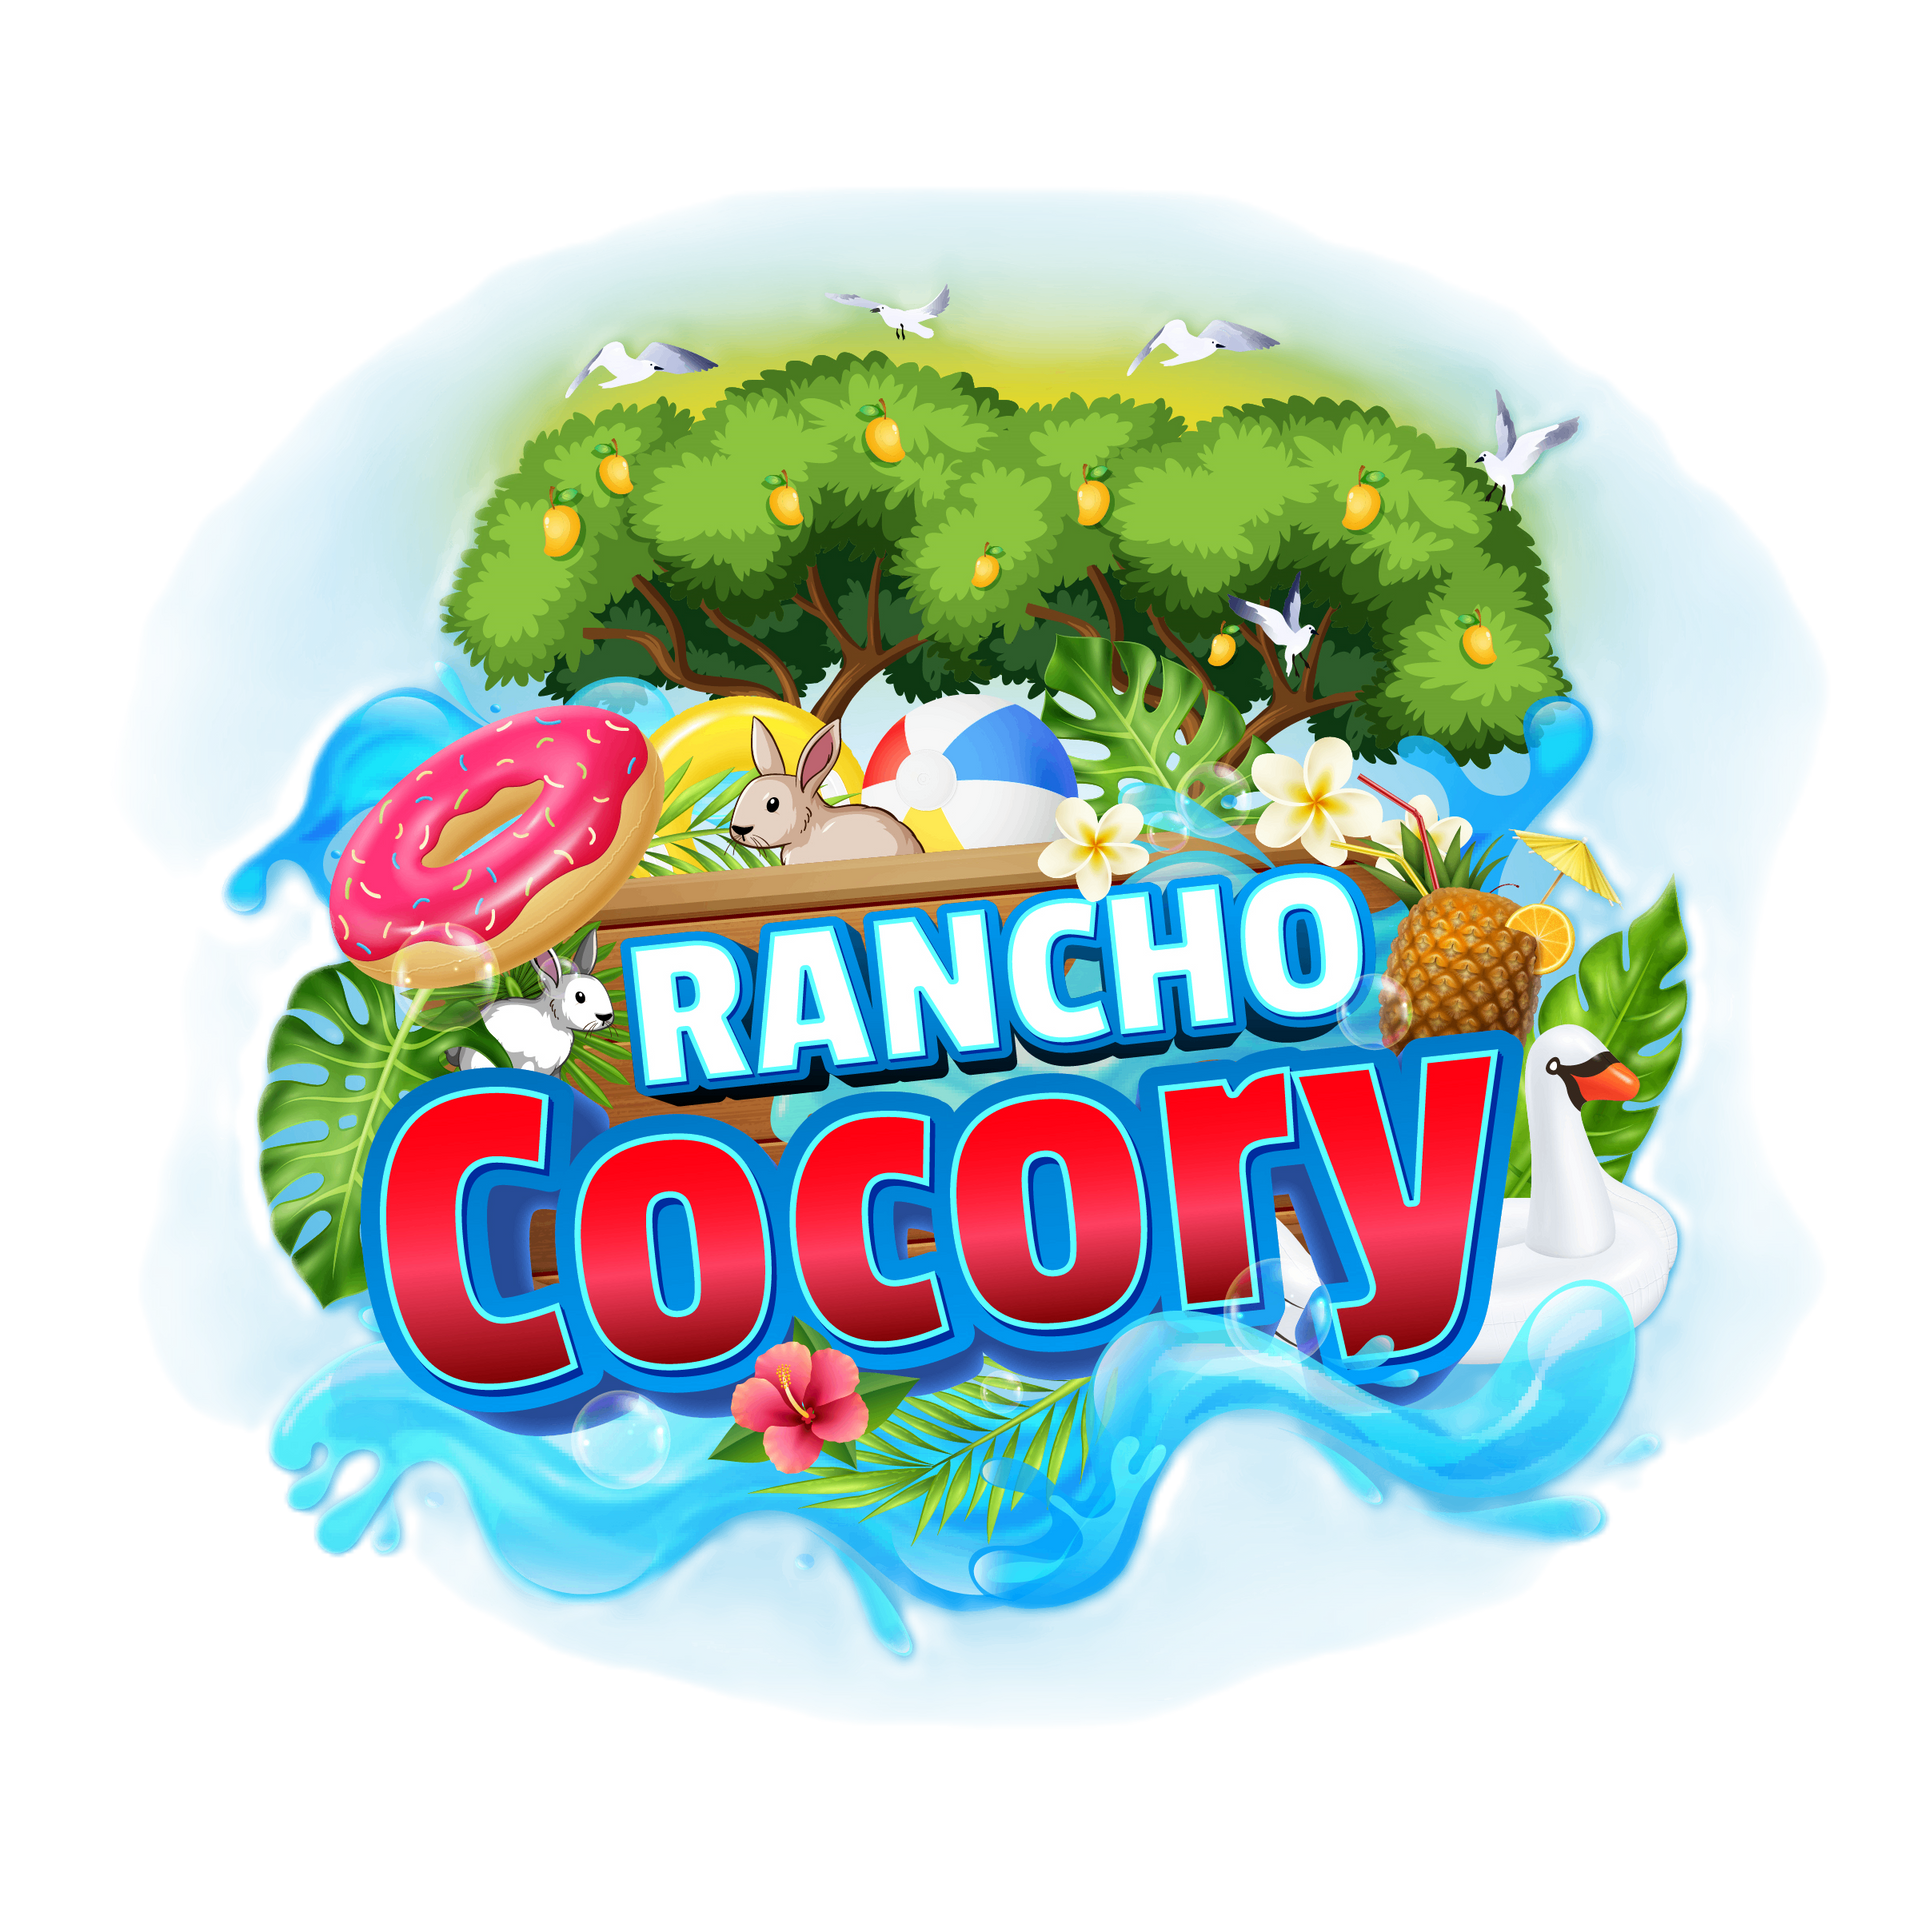 Rancho cocory Logo